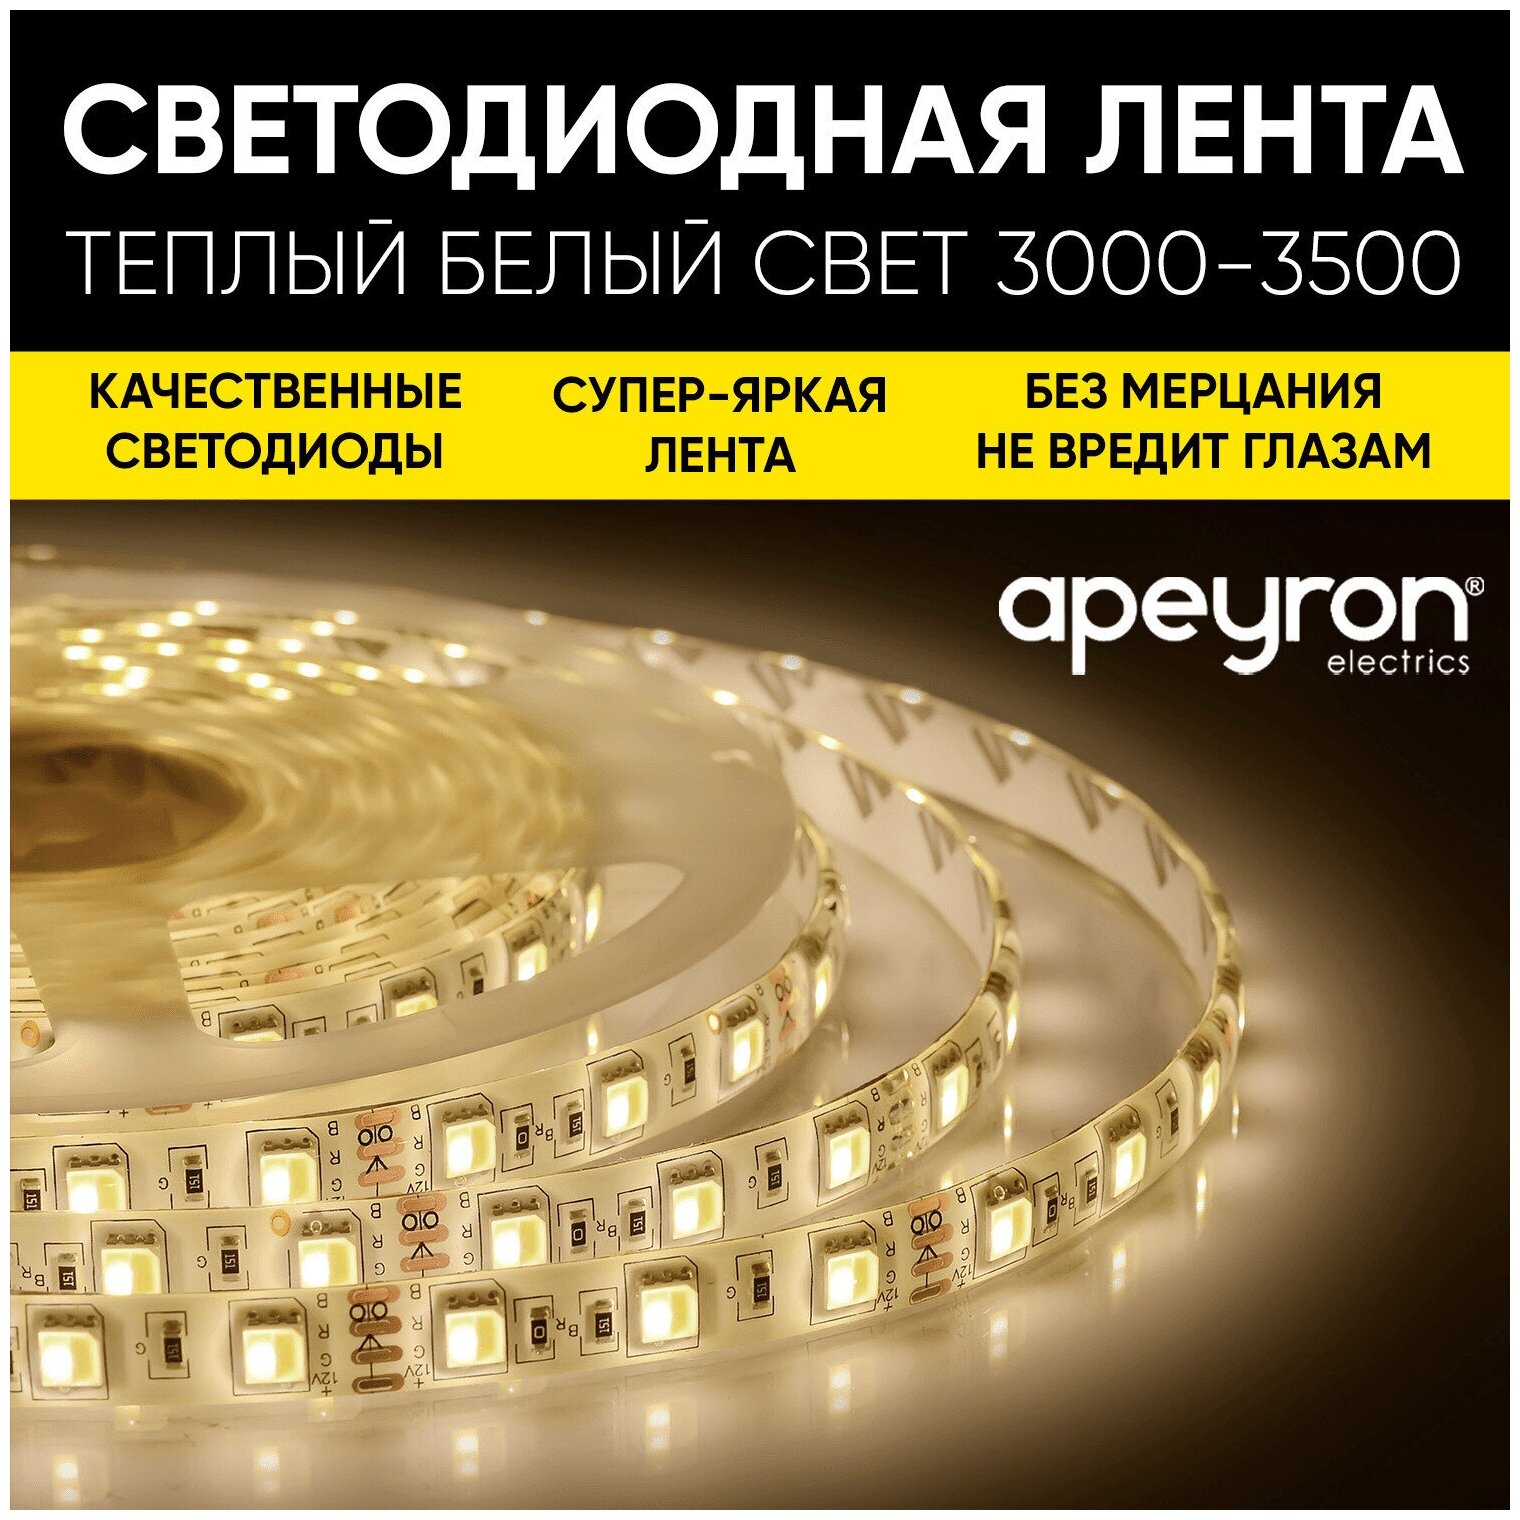 Яркая светодиодная лента Apeyron LSE-244 с напряжением 12В обладает теплым белым цветом свечения 3000K излучает световой поток равный 600 Лм/м / 60д/м / 144Вт/м / smd5050 / IP20 / длина 5 метров ширина подложки 10 мм / гарантия 1 год